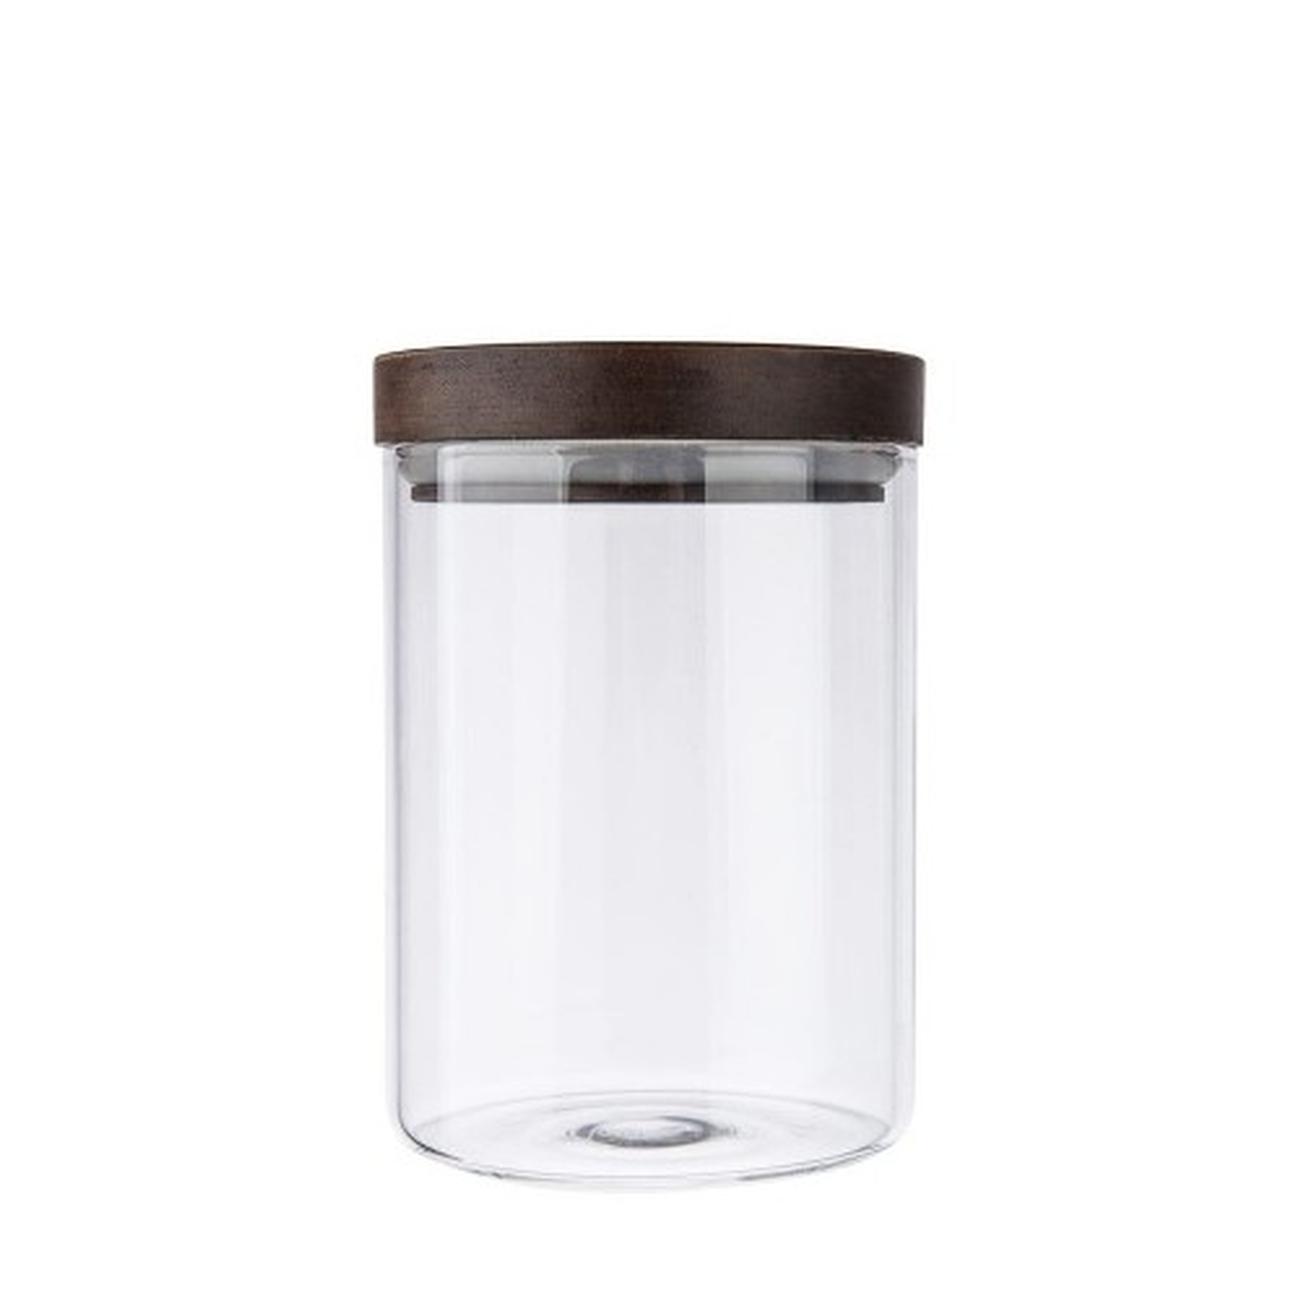 artisan-street-small-storage-jar - Artisan Street Storage Jar S